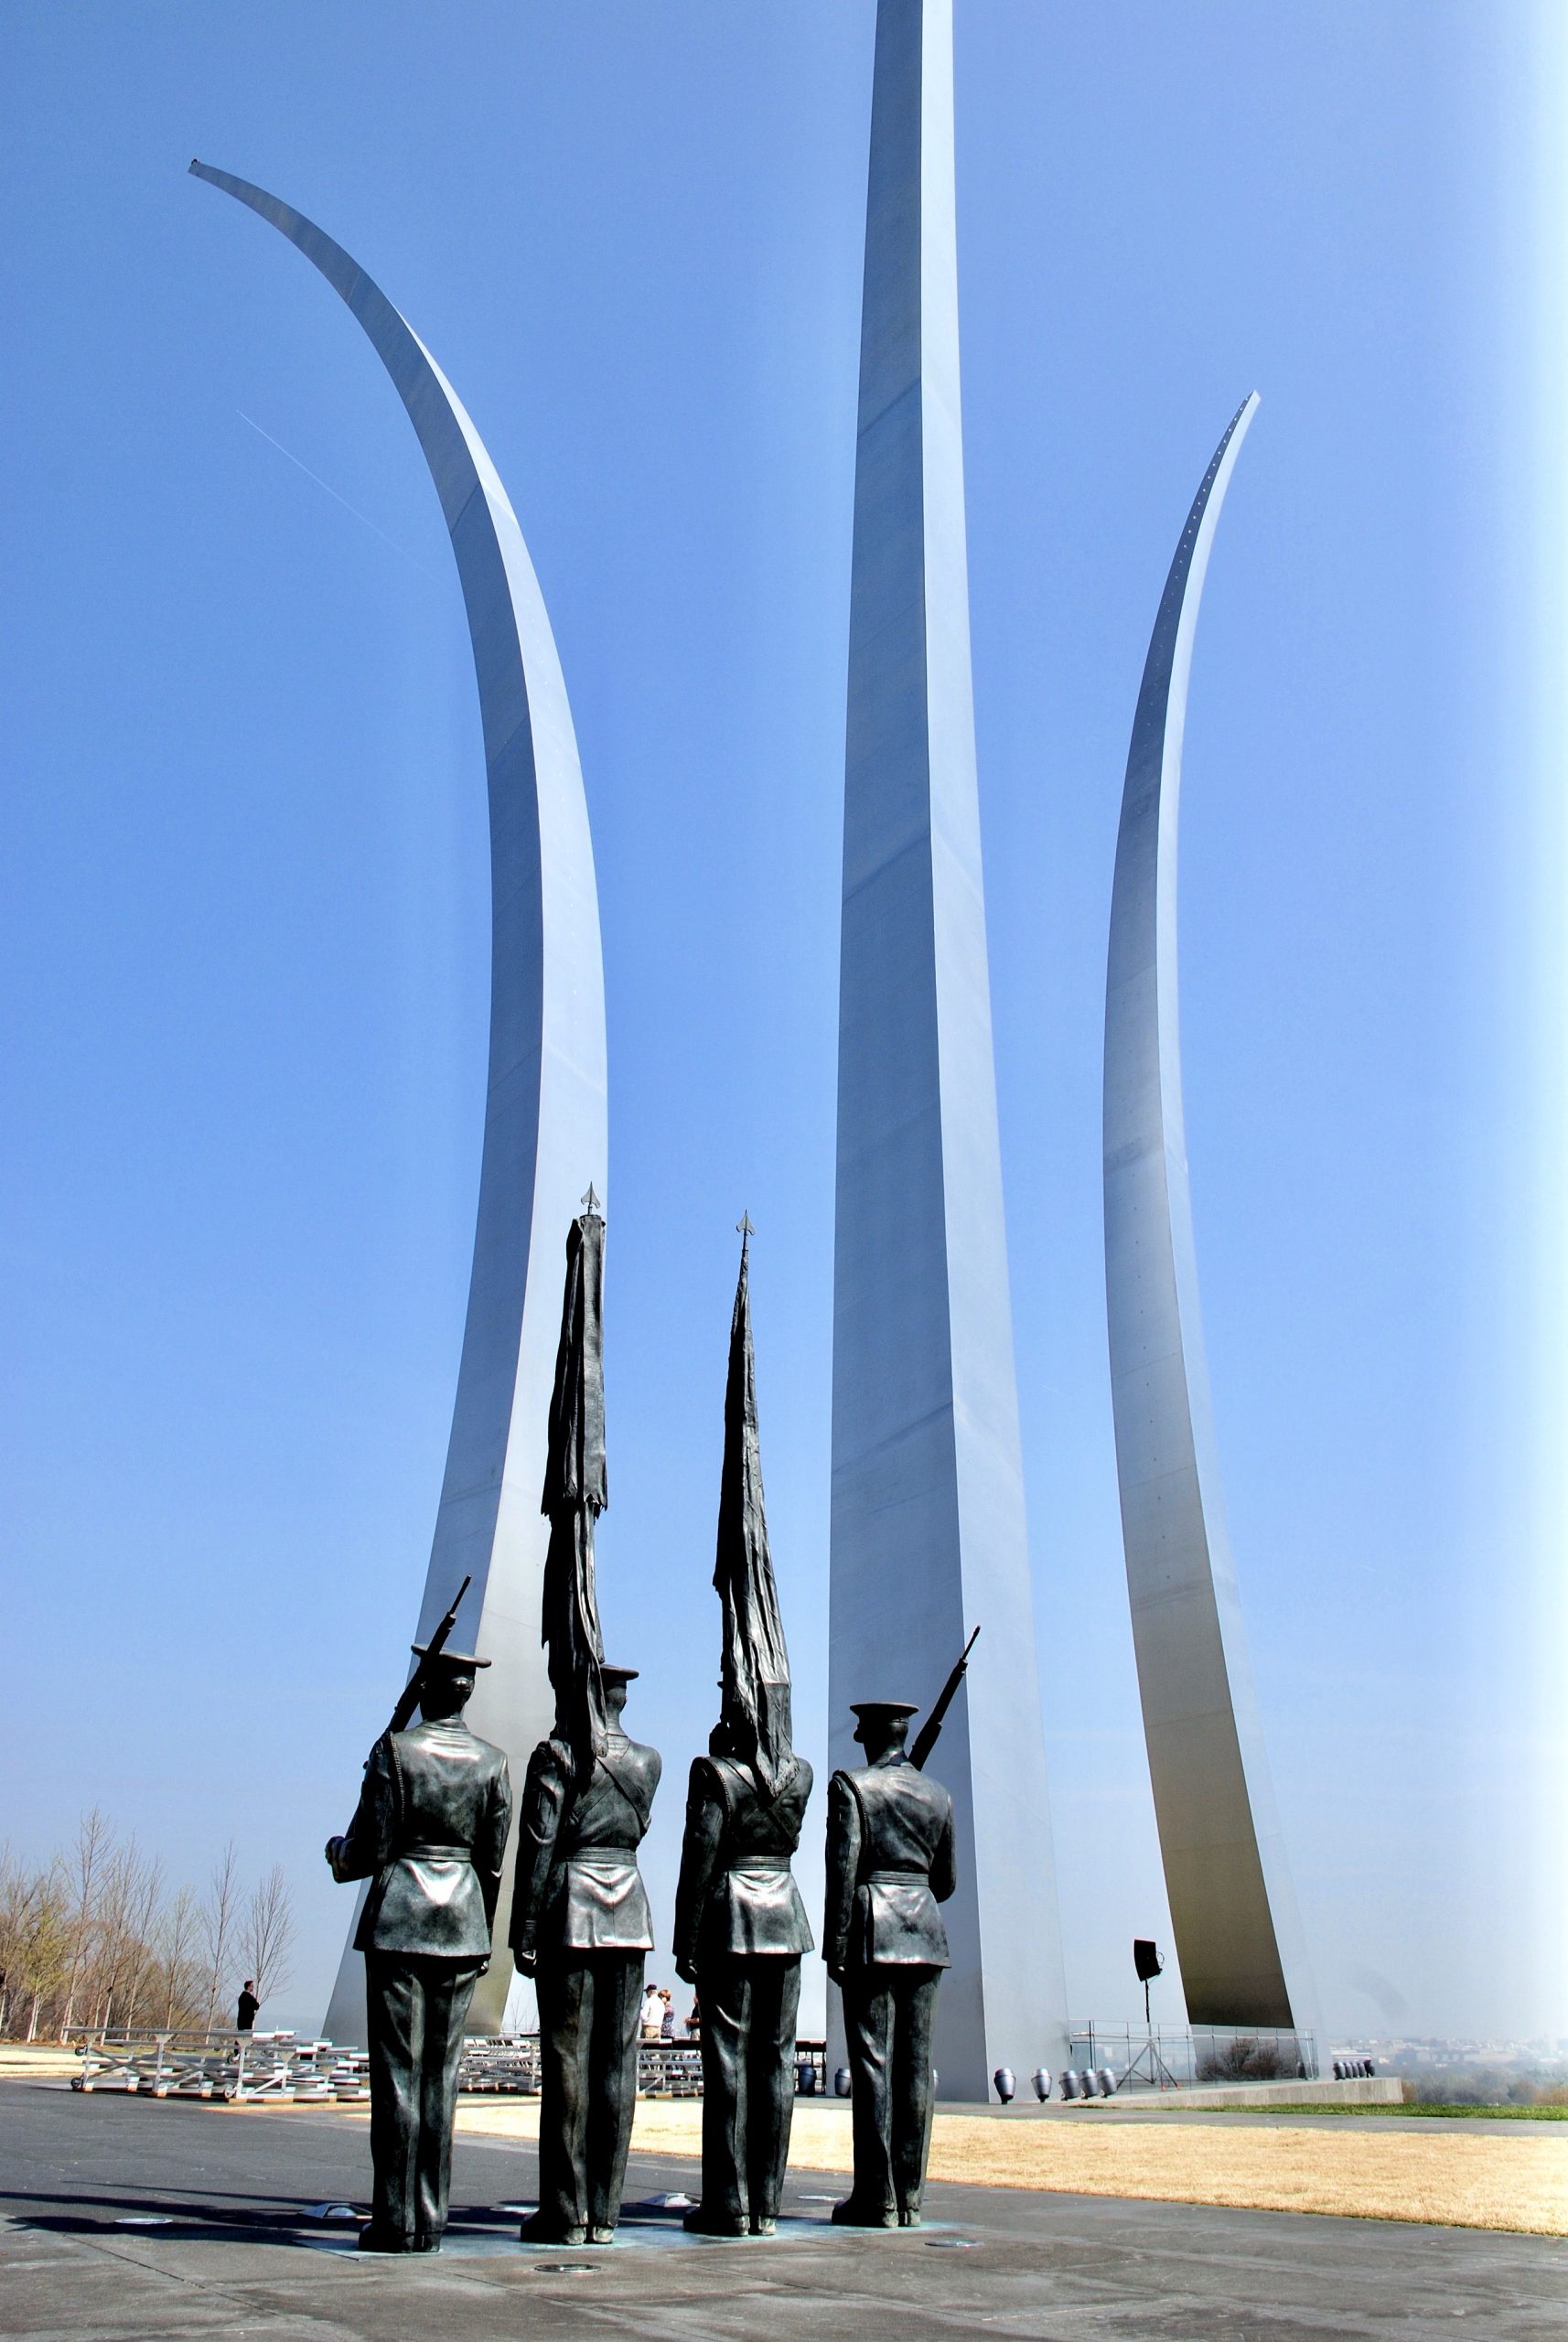 The U.S. Air Force Honor Guard Memorial